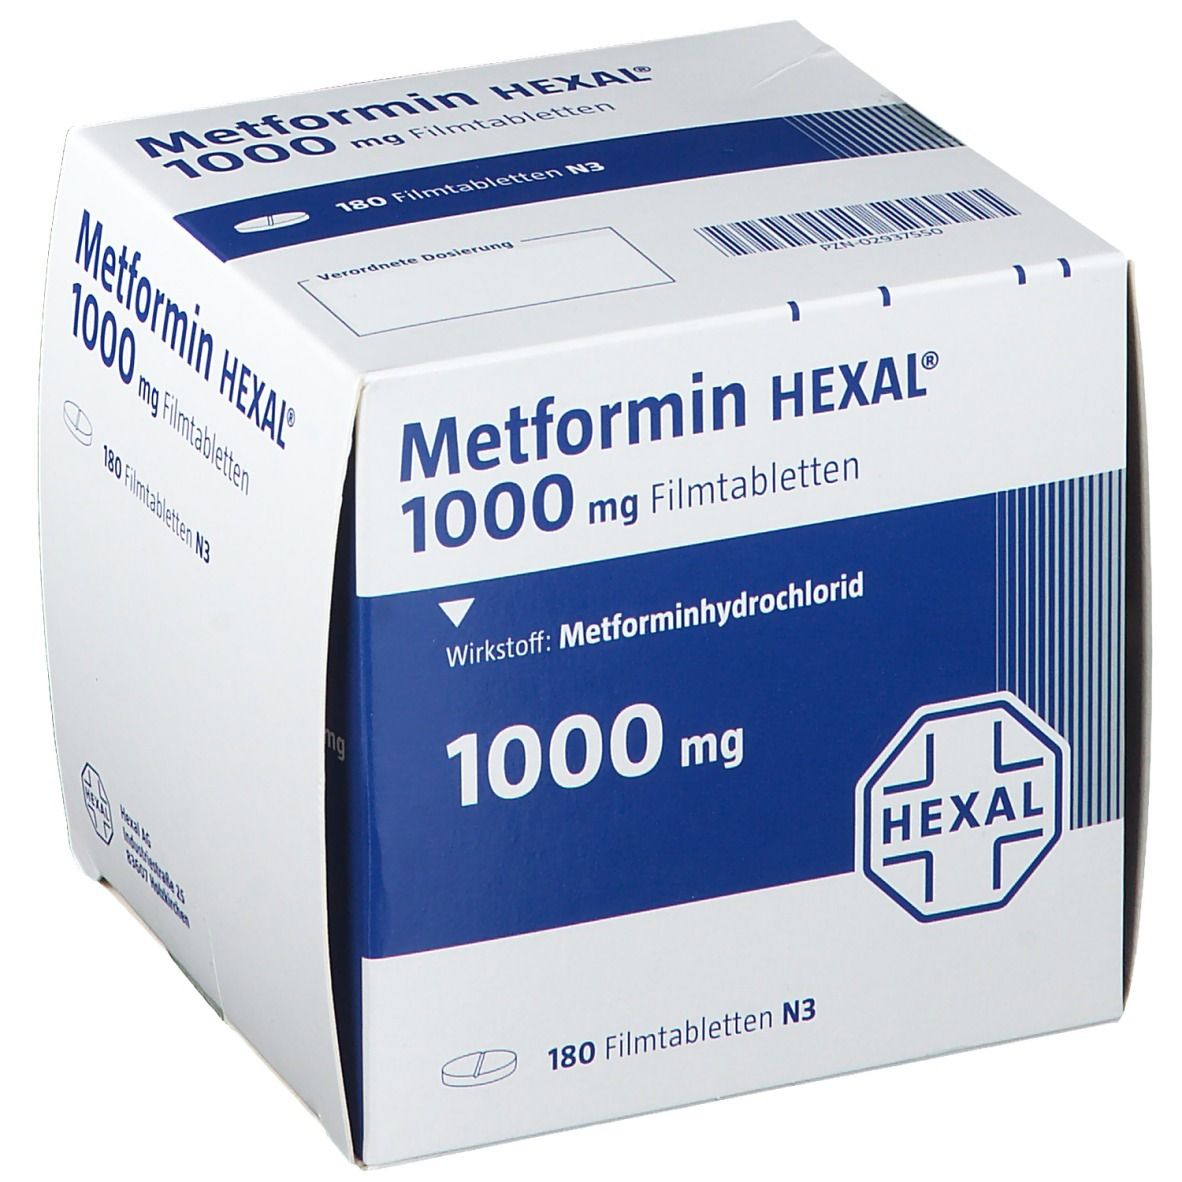 Metformin HEXAL ® 1000 mg.